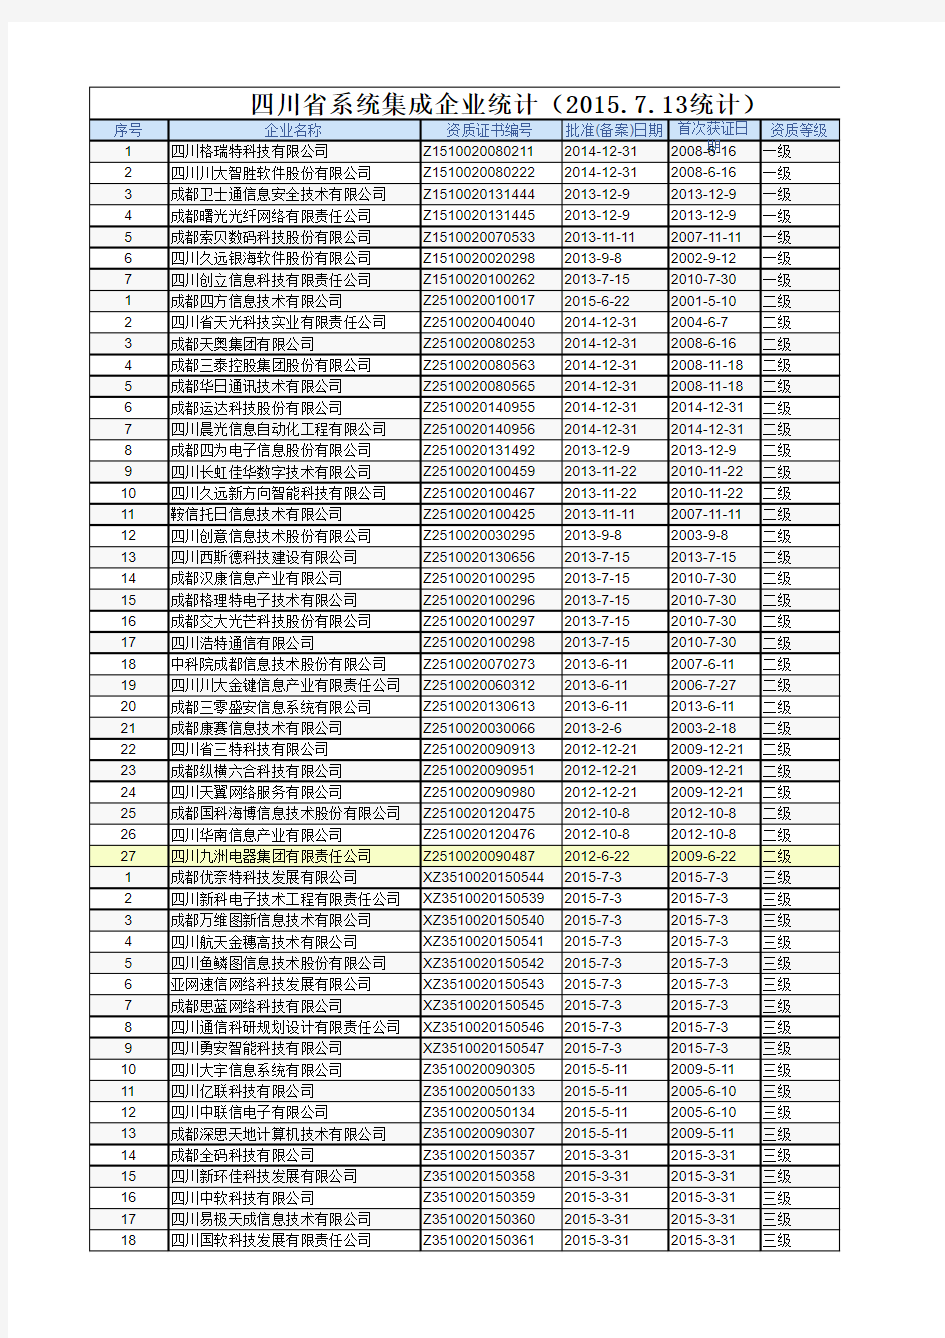 四川省系统集成资质企业名单(等级统计分析)(共293家)